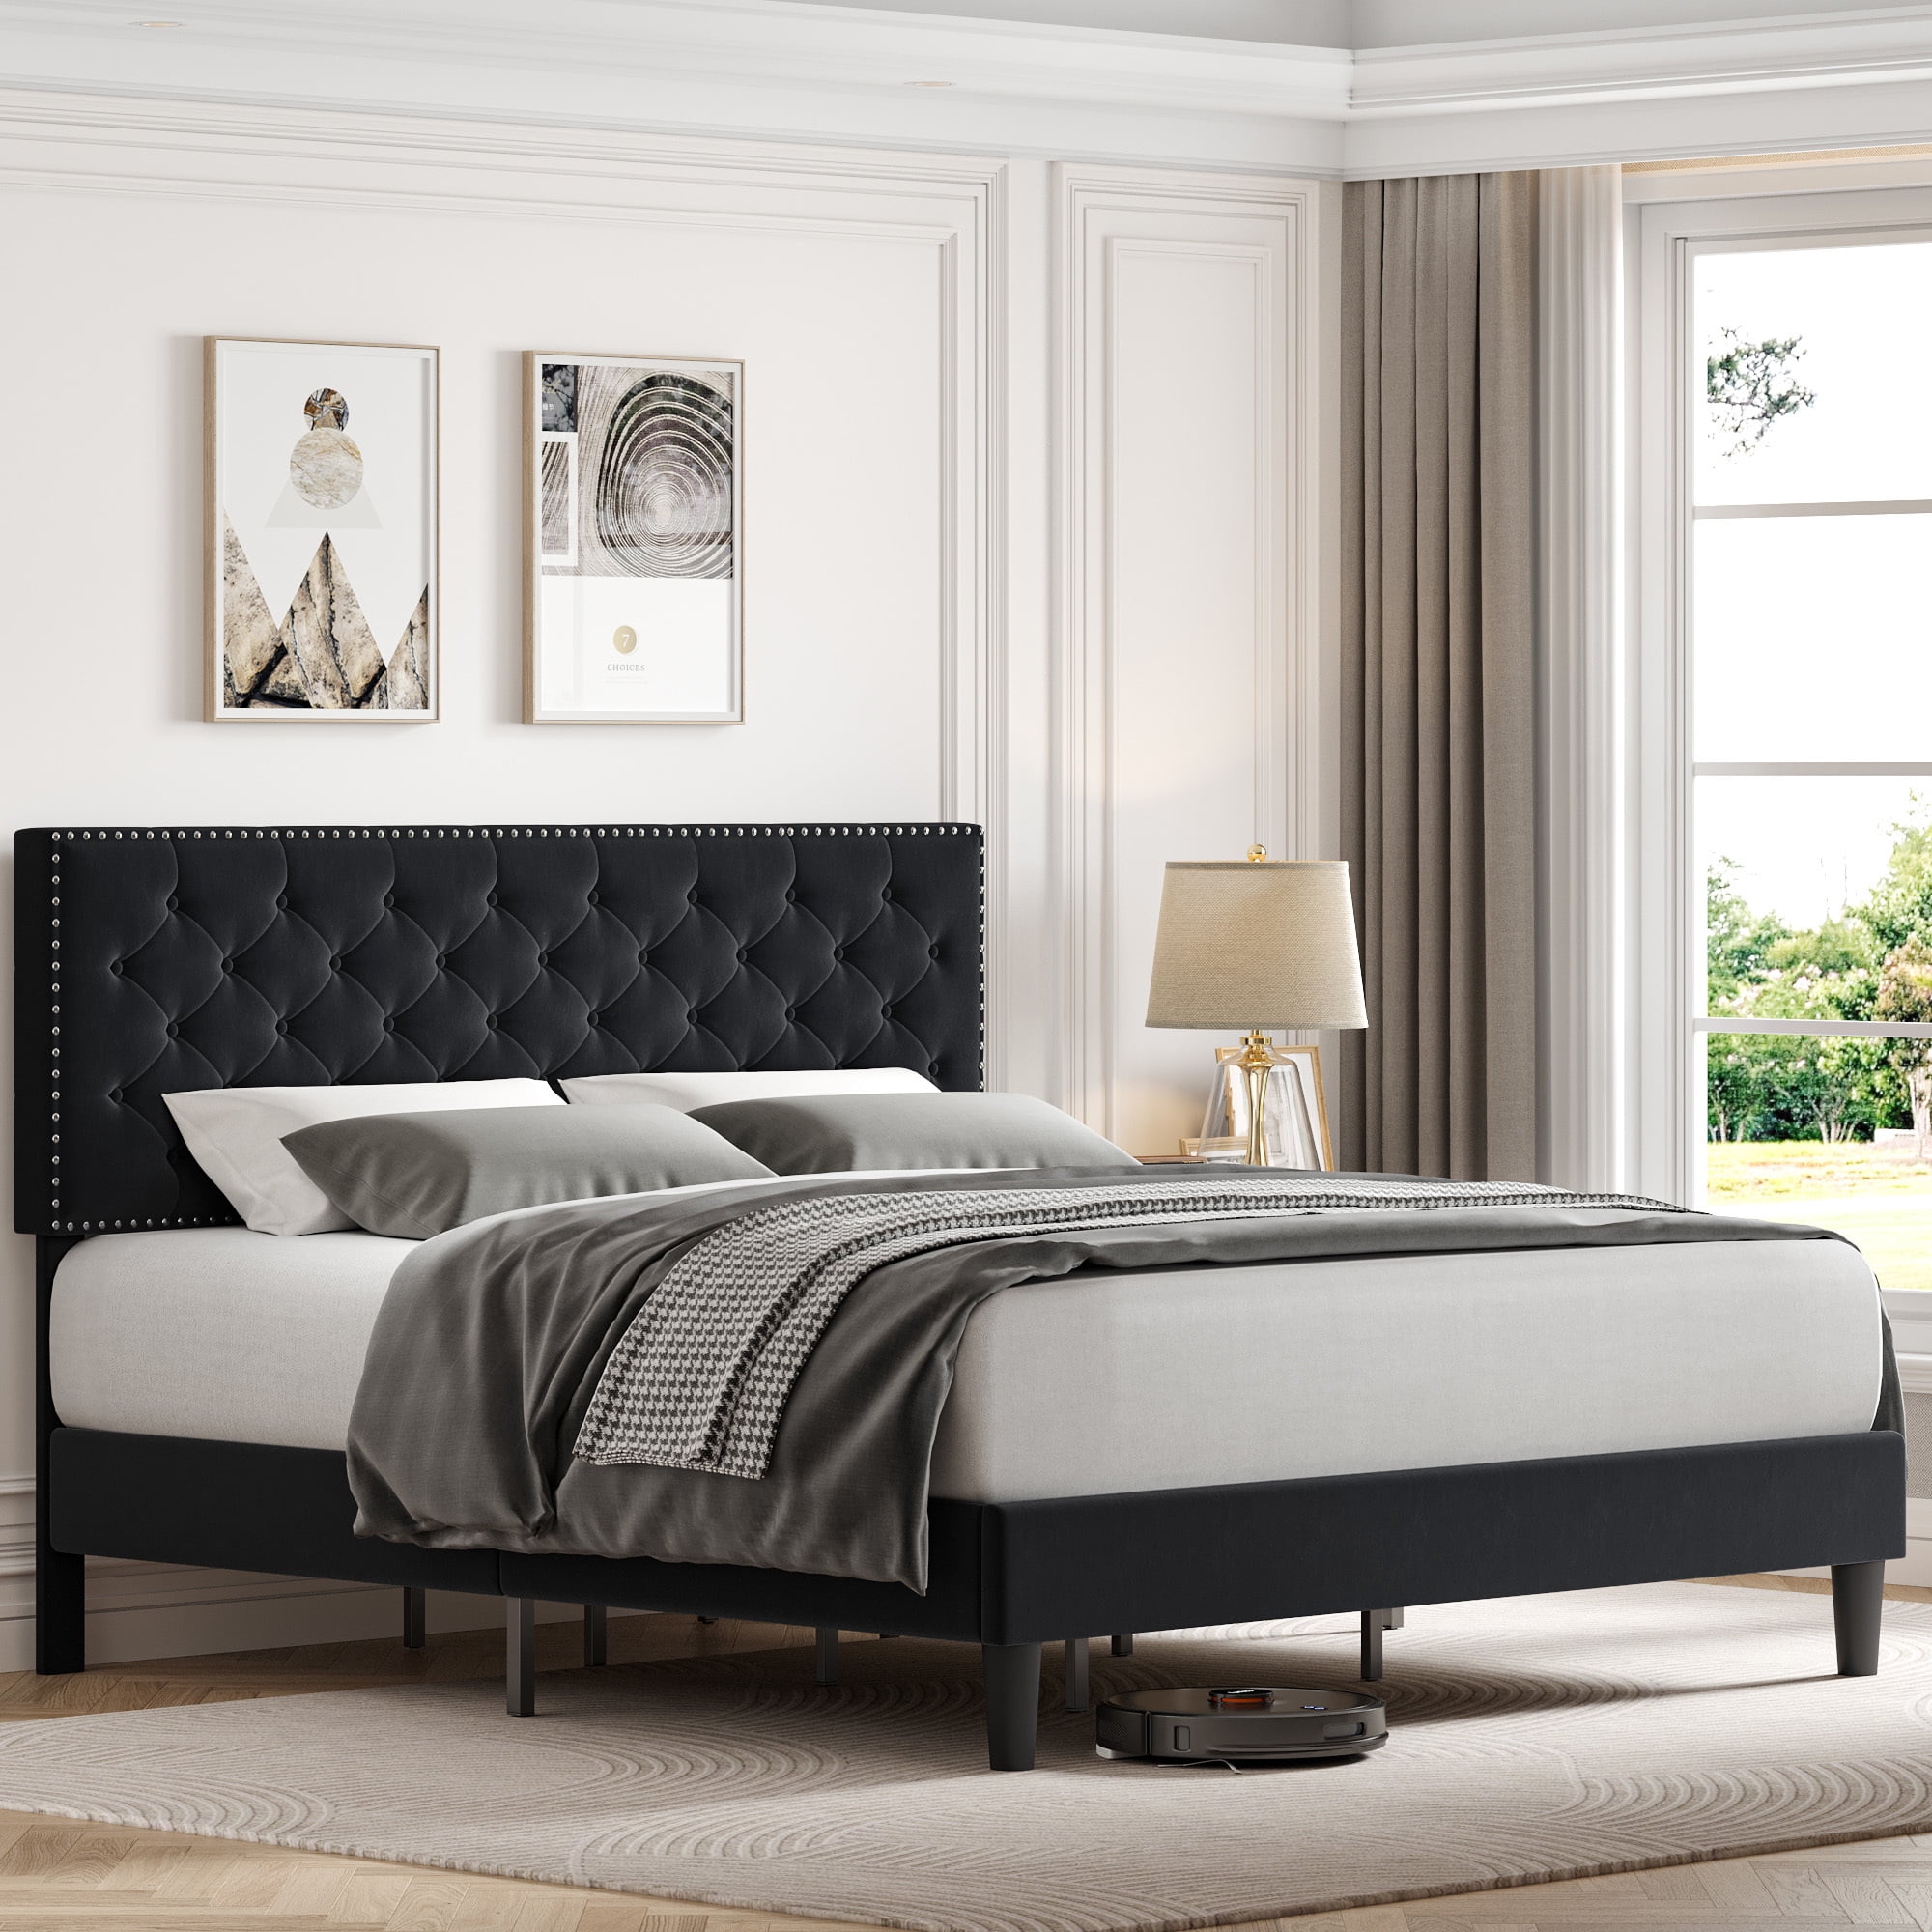 Homfa King Size Bed, Modern Upholstered Platform Bed Norway